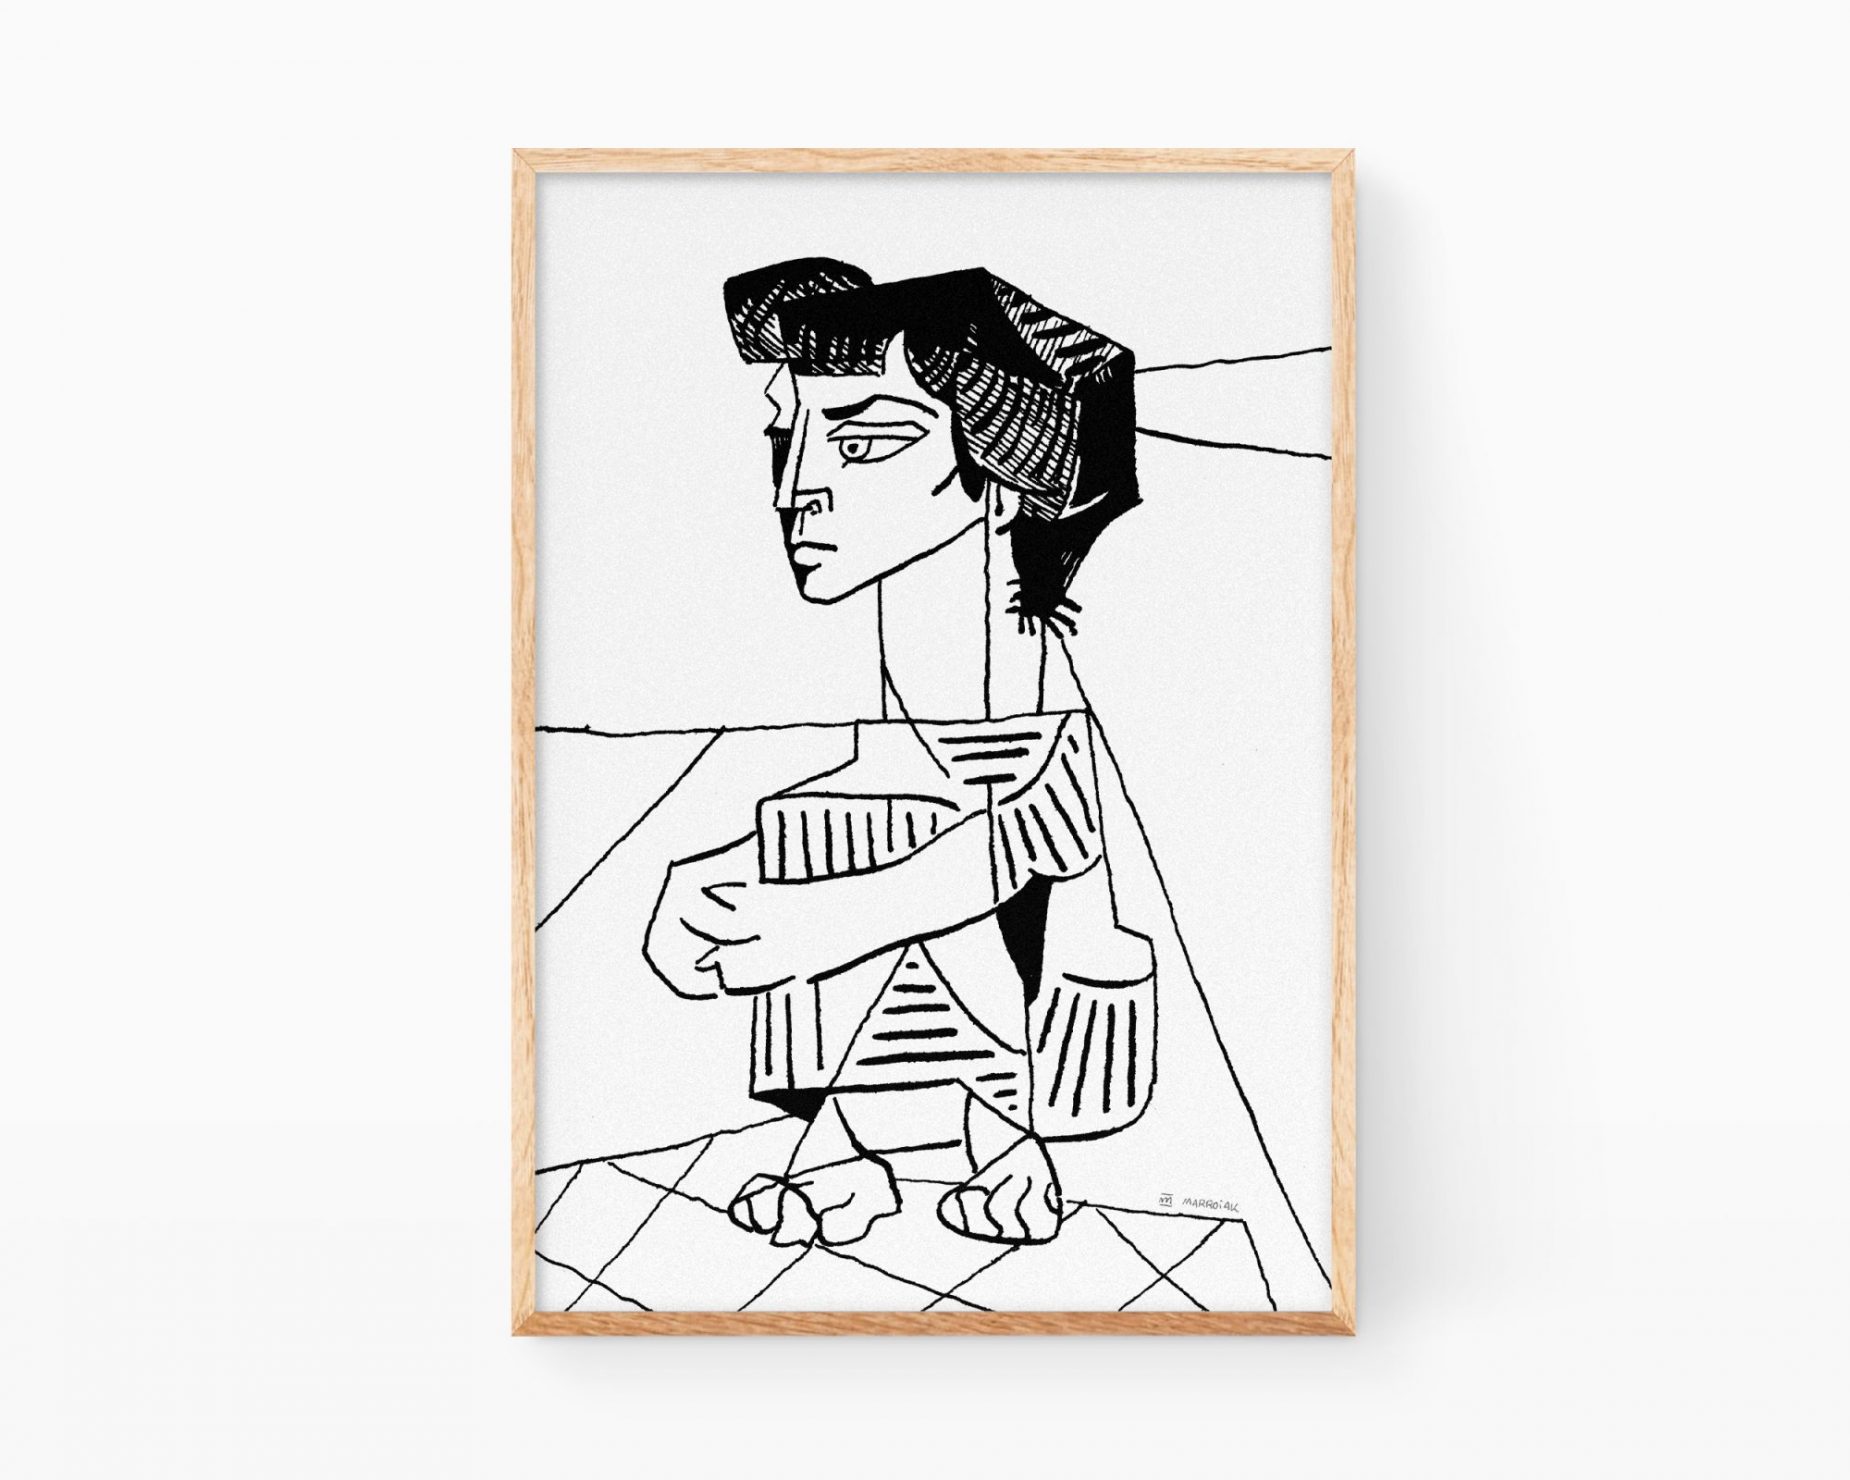 Cuadros de Pablo Picasso. Lámina decorativa ilustración Mujer sentada de estilo cubista en blanco y negro. Prints para decorar casas de estilo nórdico y minimalista con arte lineal y dibujos modernos.